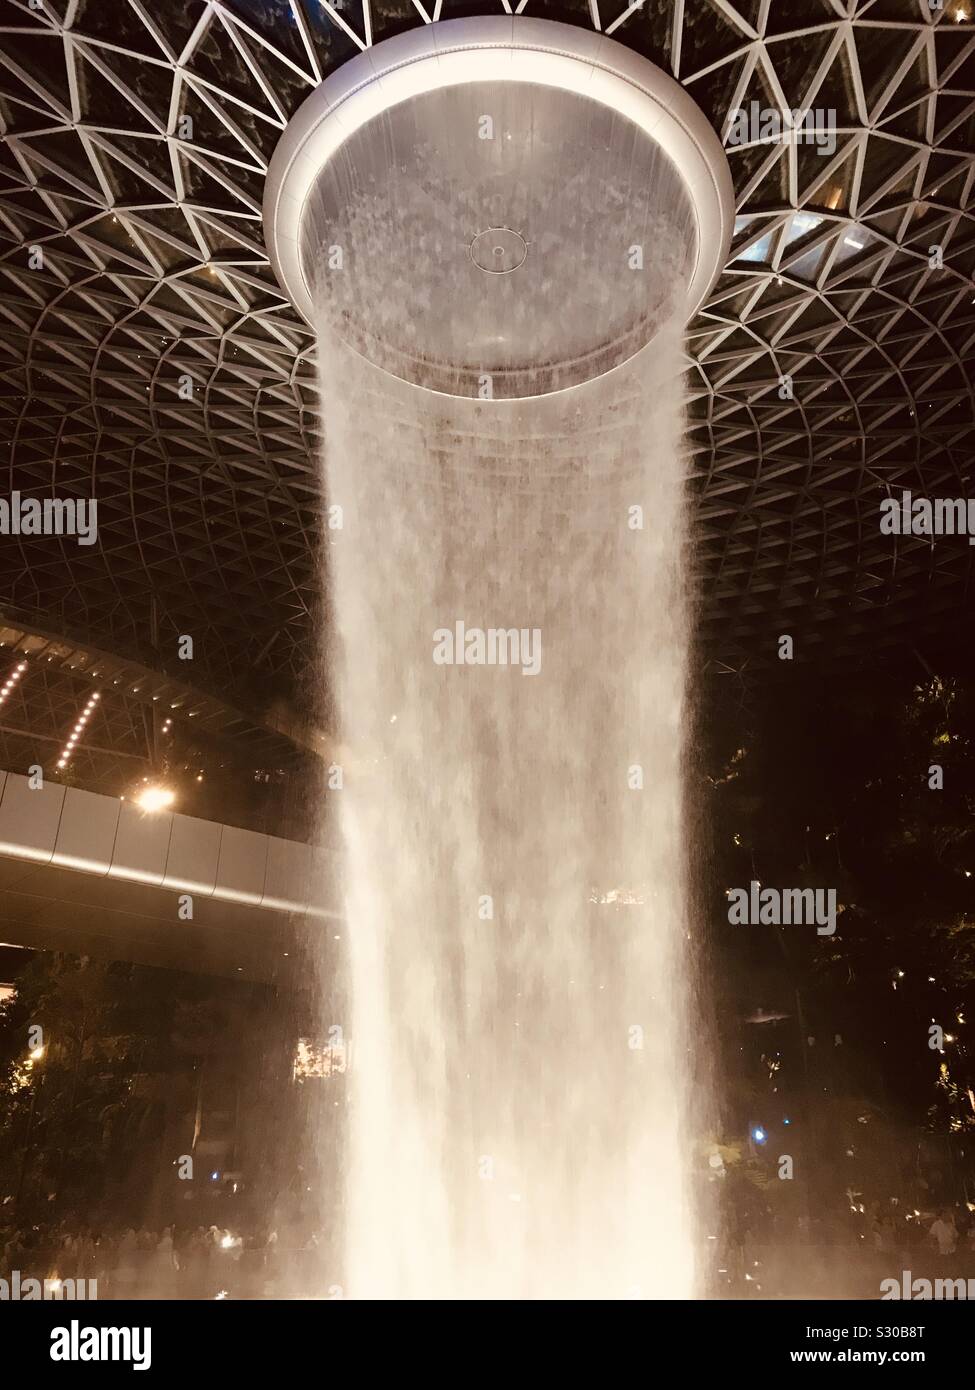 HSBC rain Vortex in Singapore Jewel Changi Airport- water gushing from 7 storey height Stock Photo